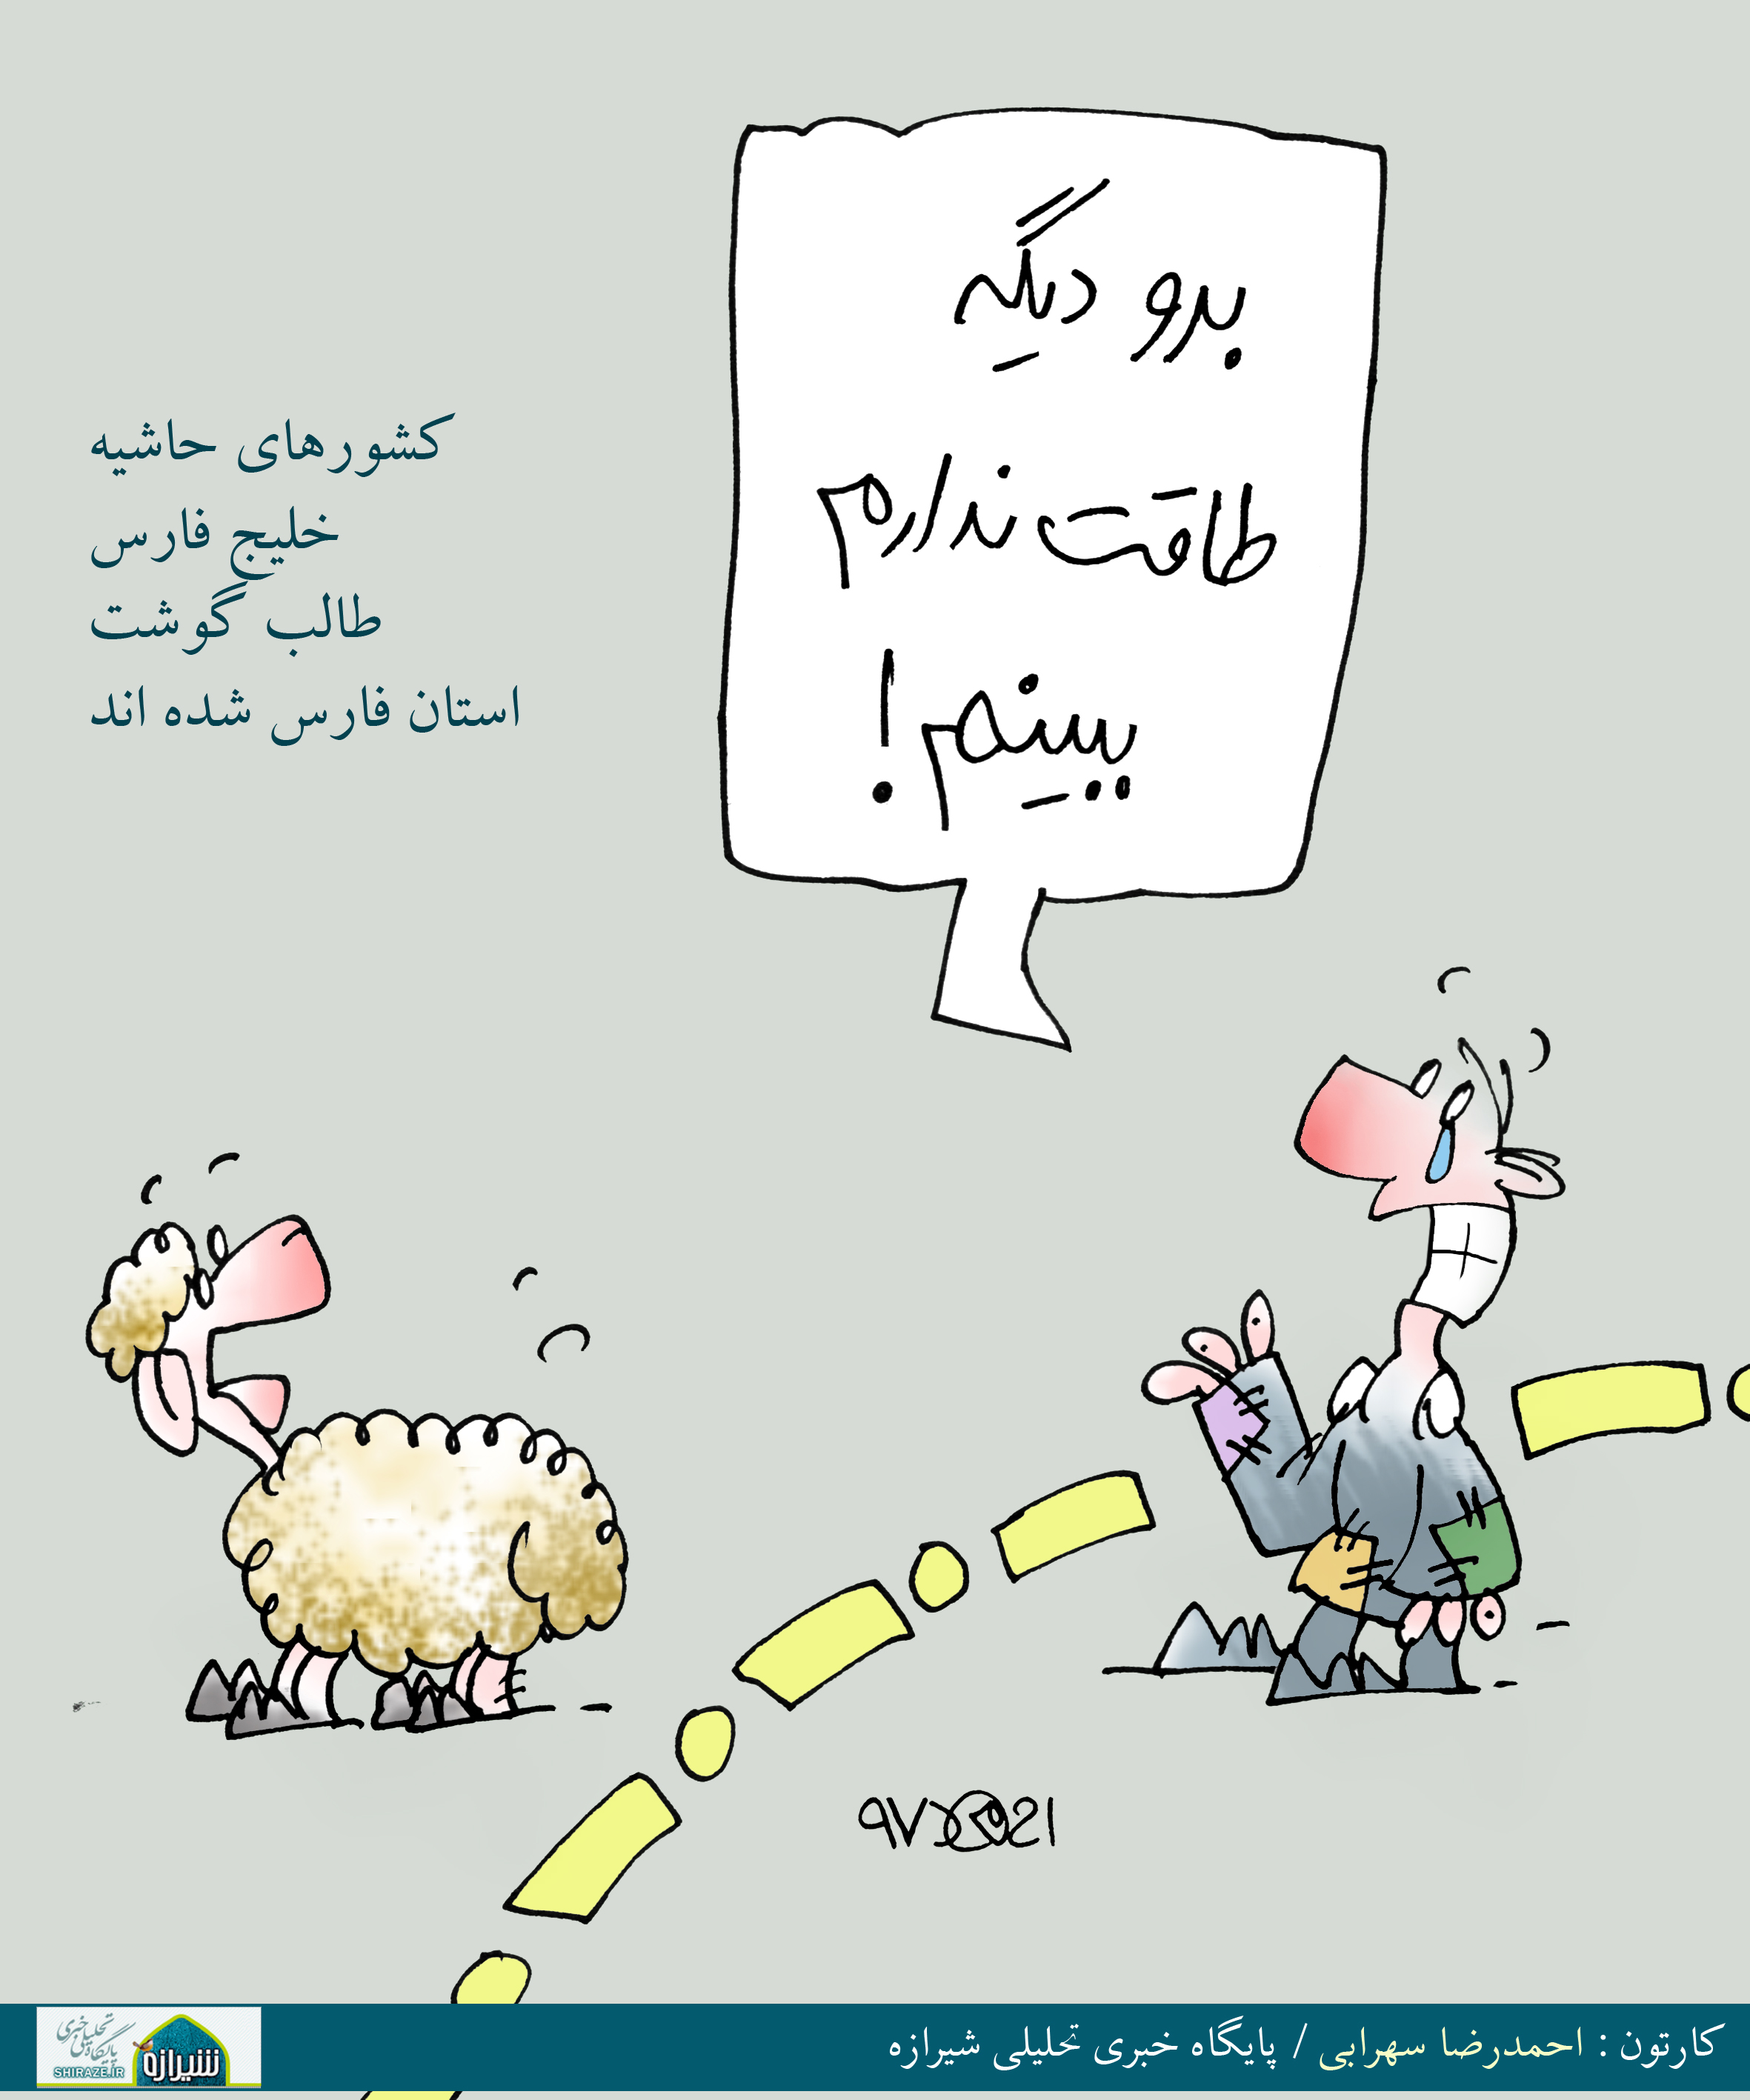 کاریکاتور شیرازه؛ برو دیگه طاقت ندارم ببینم!